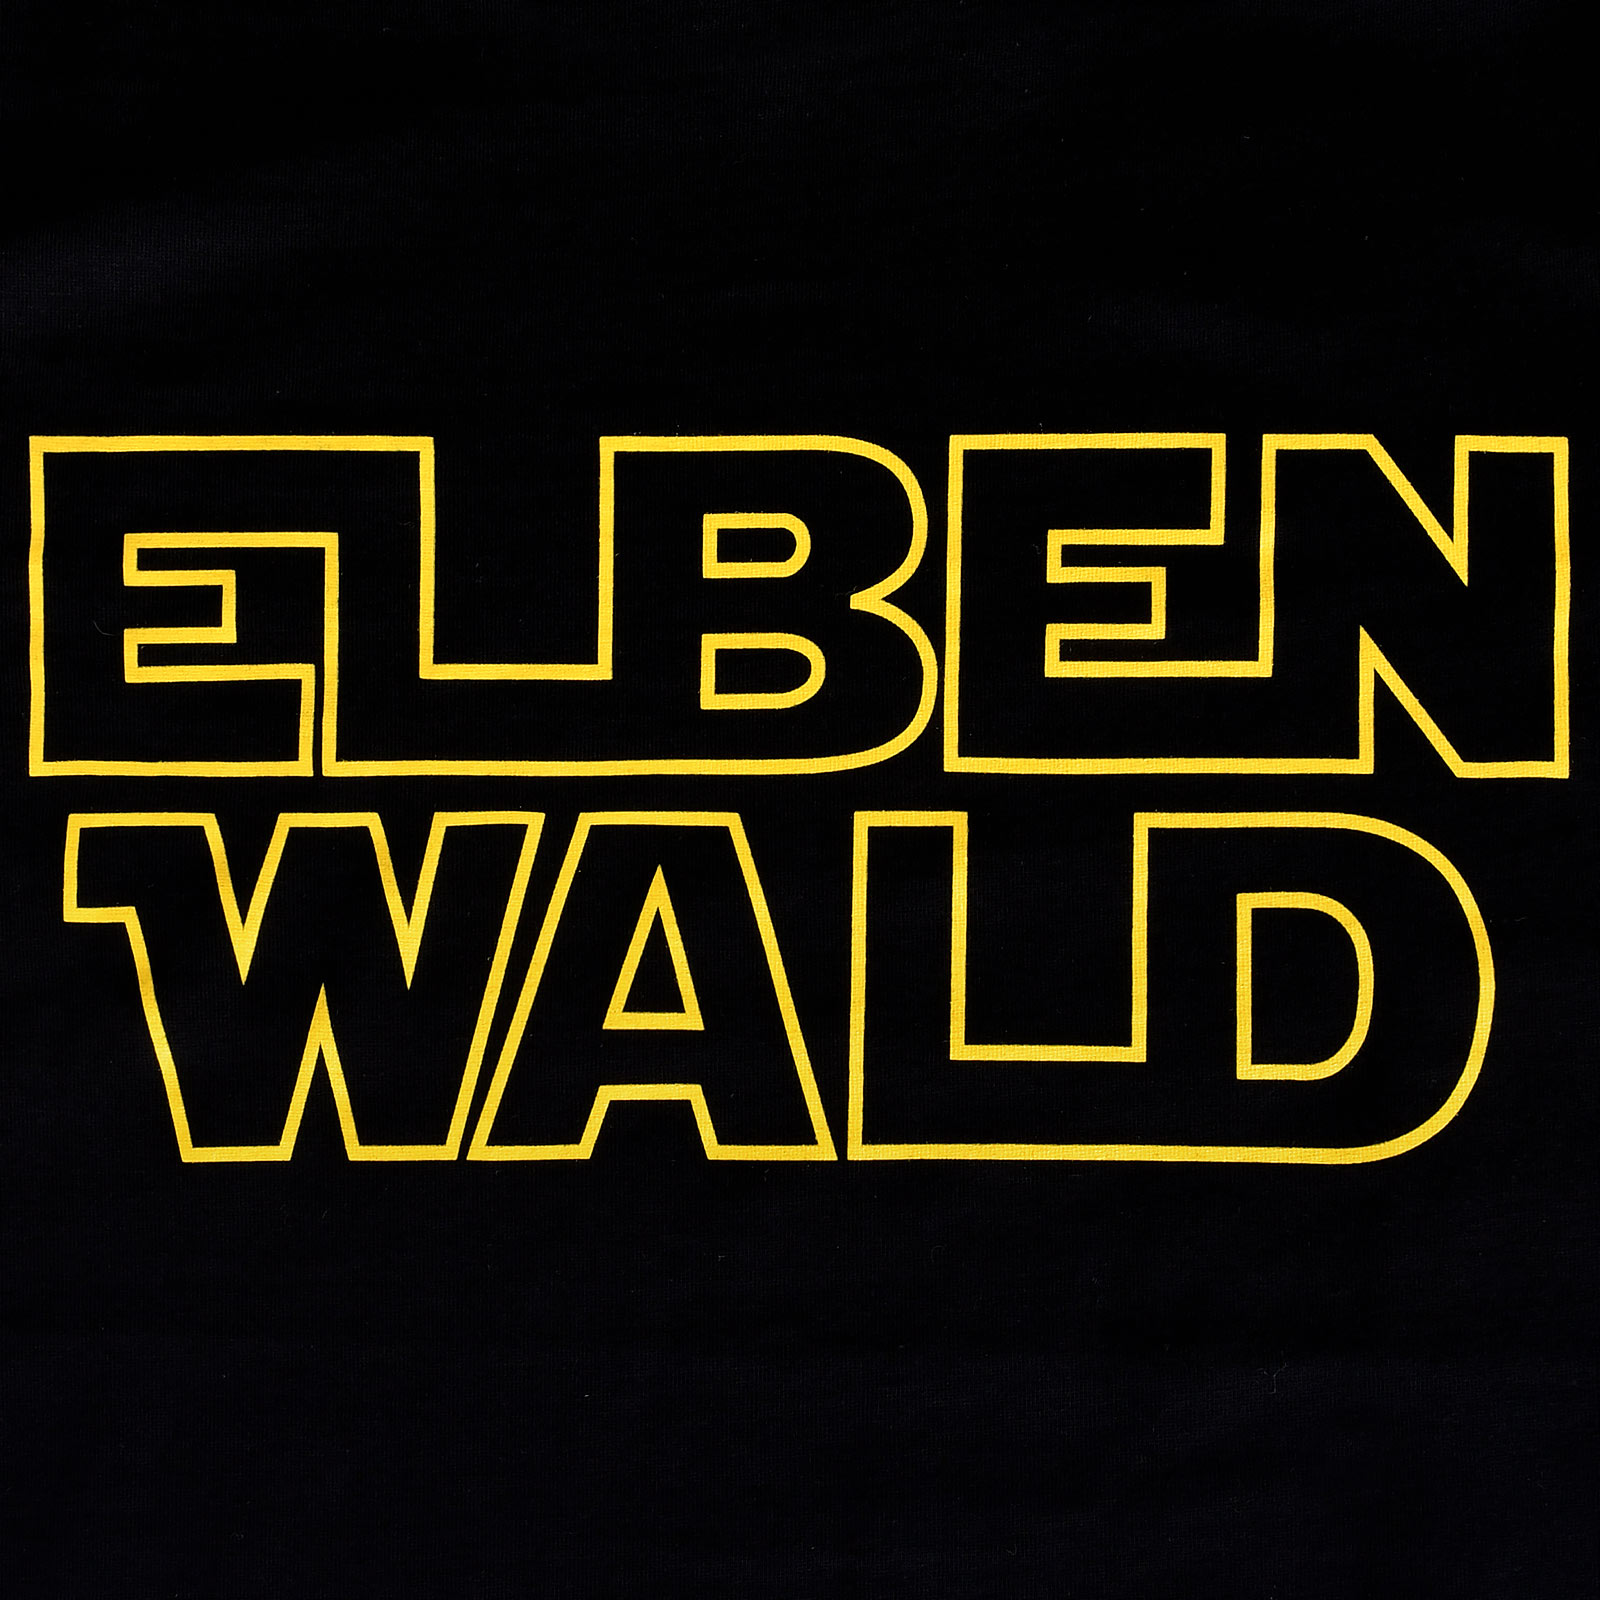 T-shirt Elbenwald Logo pour les fans de Star Wars